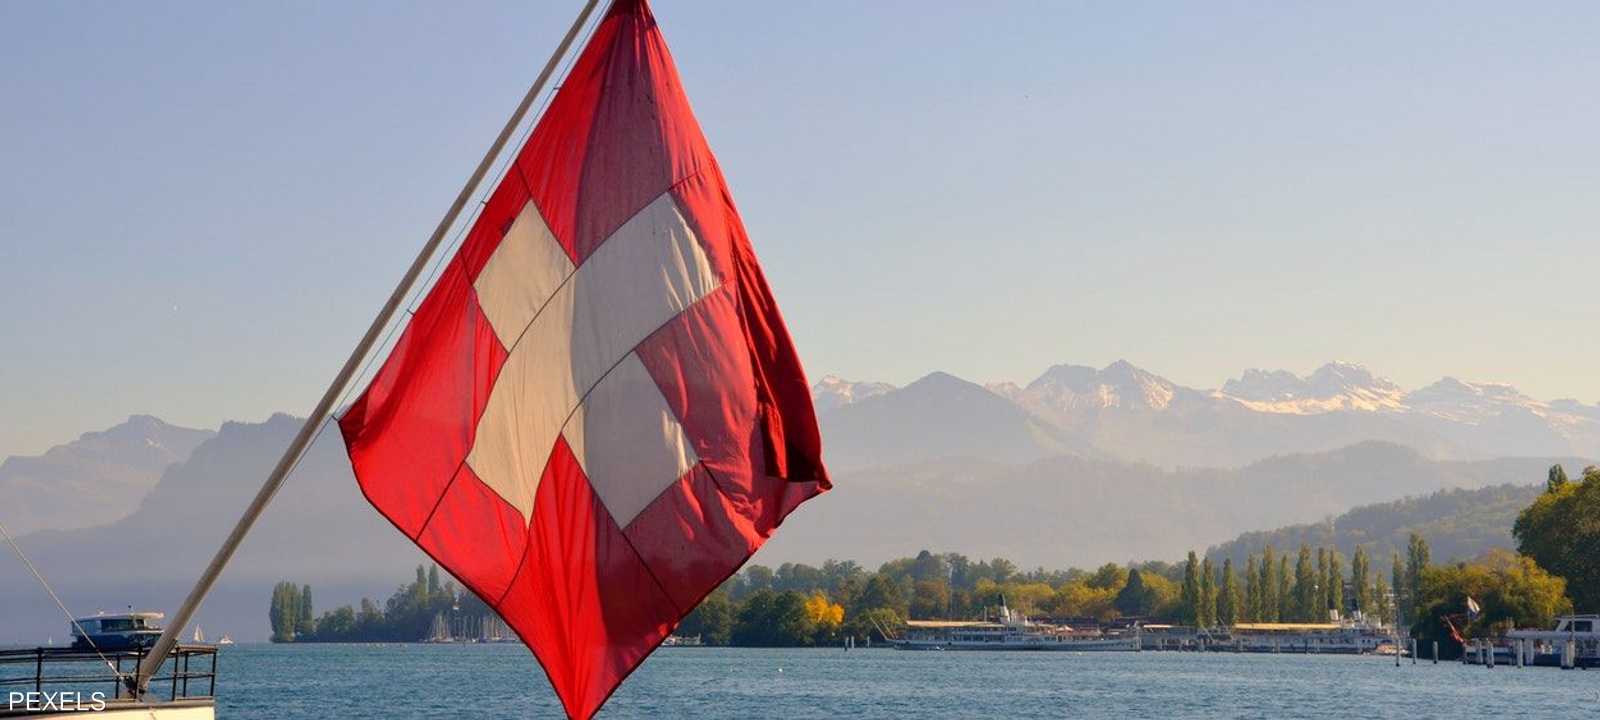 سويسرا تكشف عن خطط لمعالجة نقص في الغاز